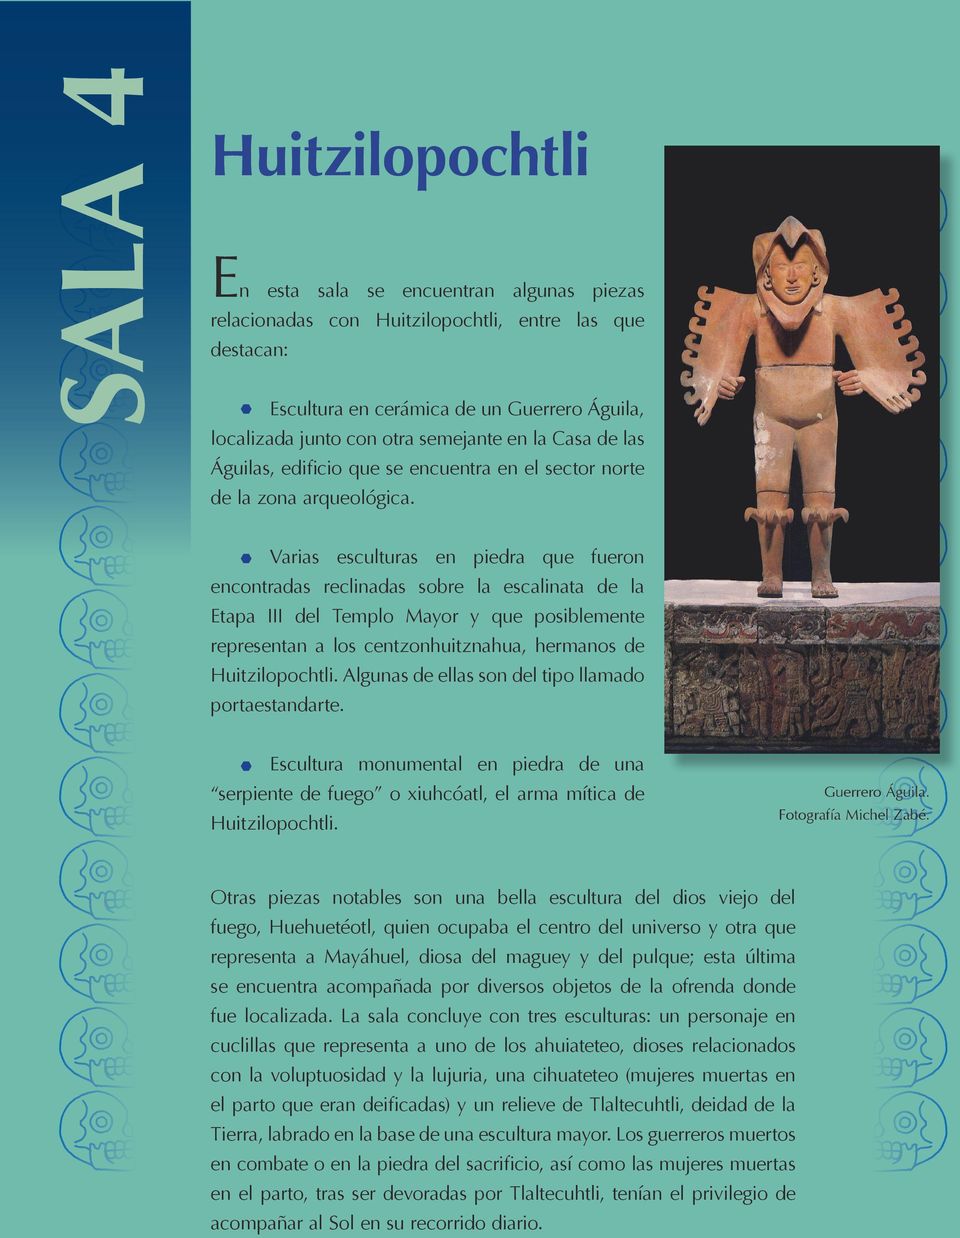 Varias esculturas en piedra que fueron encontradas reclinadas sobre la escalinata de la Etapa III del Templo Mayor y que posiblemente representan a los centzonhuitznahua, hermanos de Huitzilopochtli.